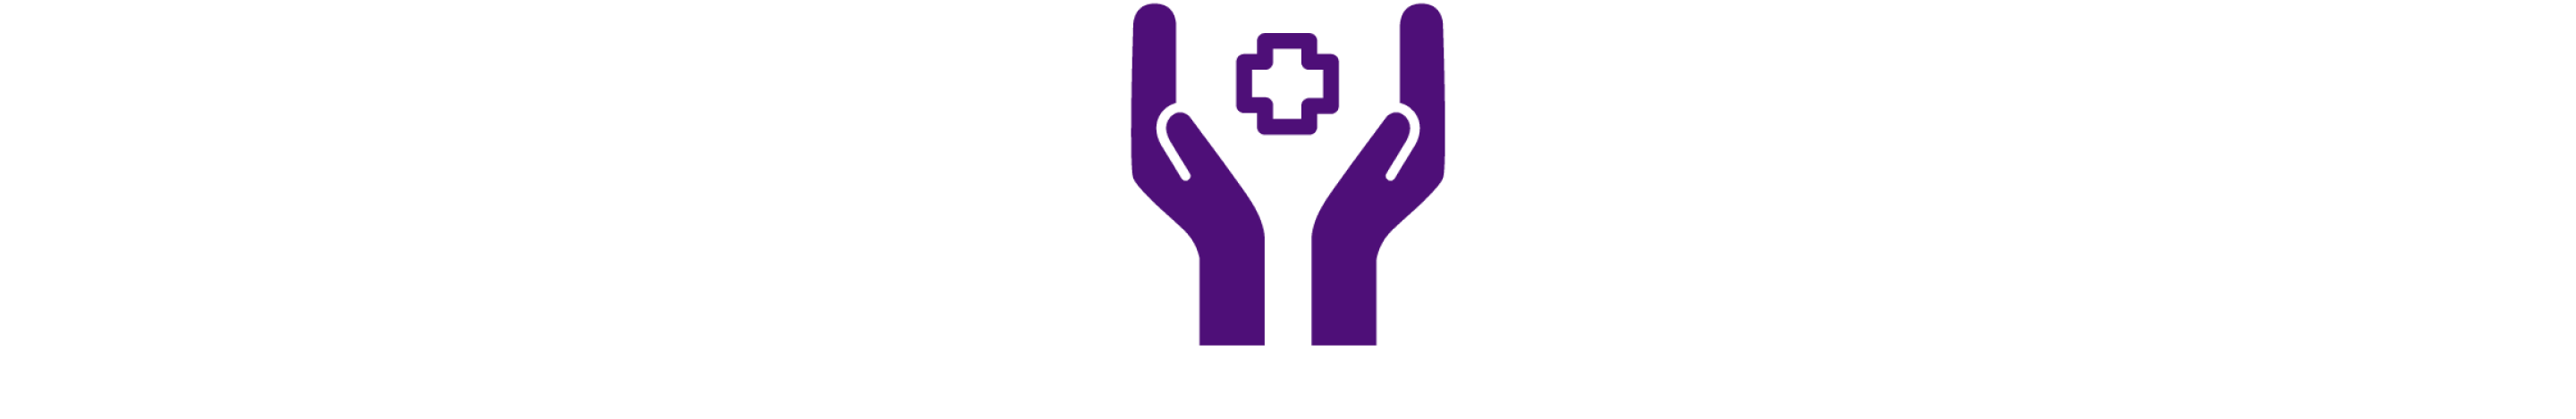 十字の医療ロゴを両手で包み込む様子を描いた濃い紫色のアイコン